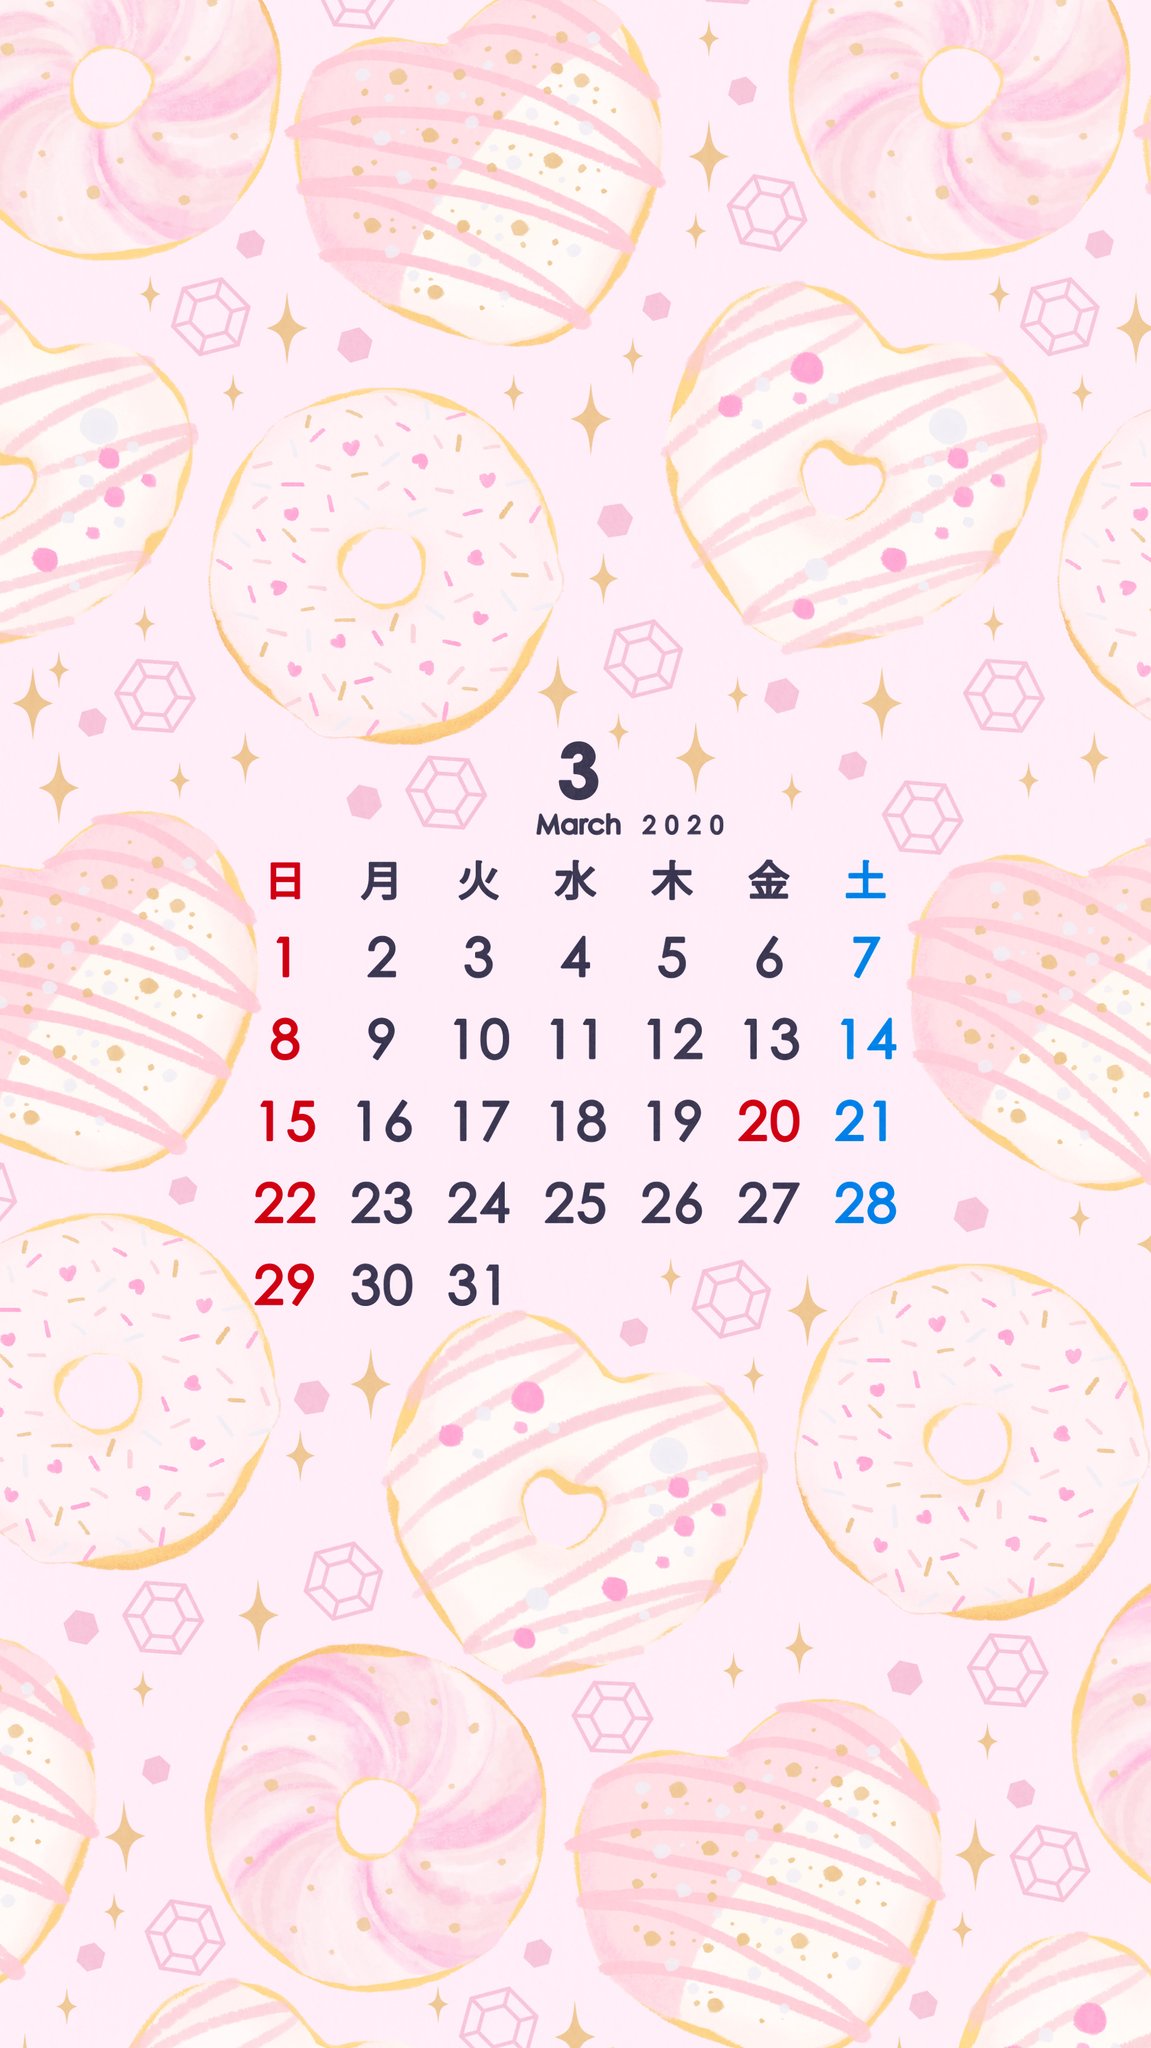 Omiyu お返事遅くなります En Twitter パステルピンクな壁紙カレンダー 3月 Illust Illustration 壁紙 イラスト Iphone壁紙 Donuts ドーナツ カレンダー 3月